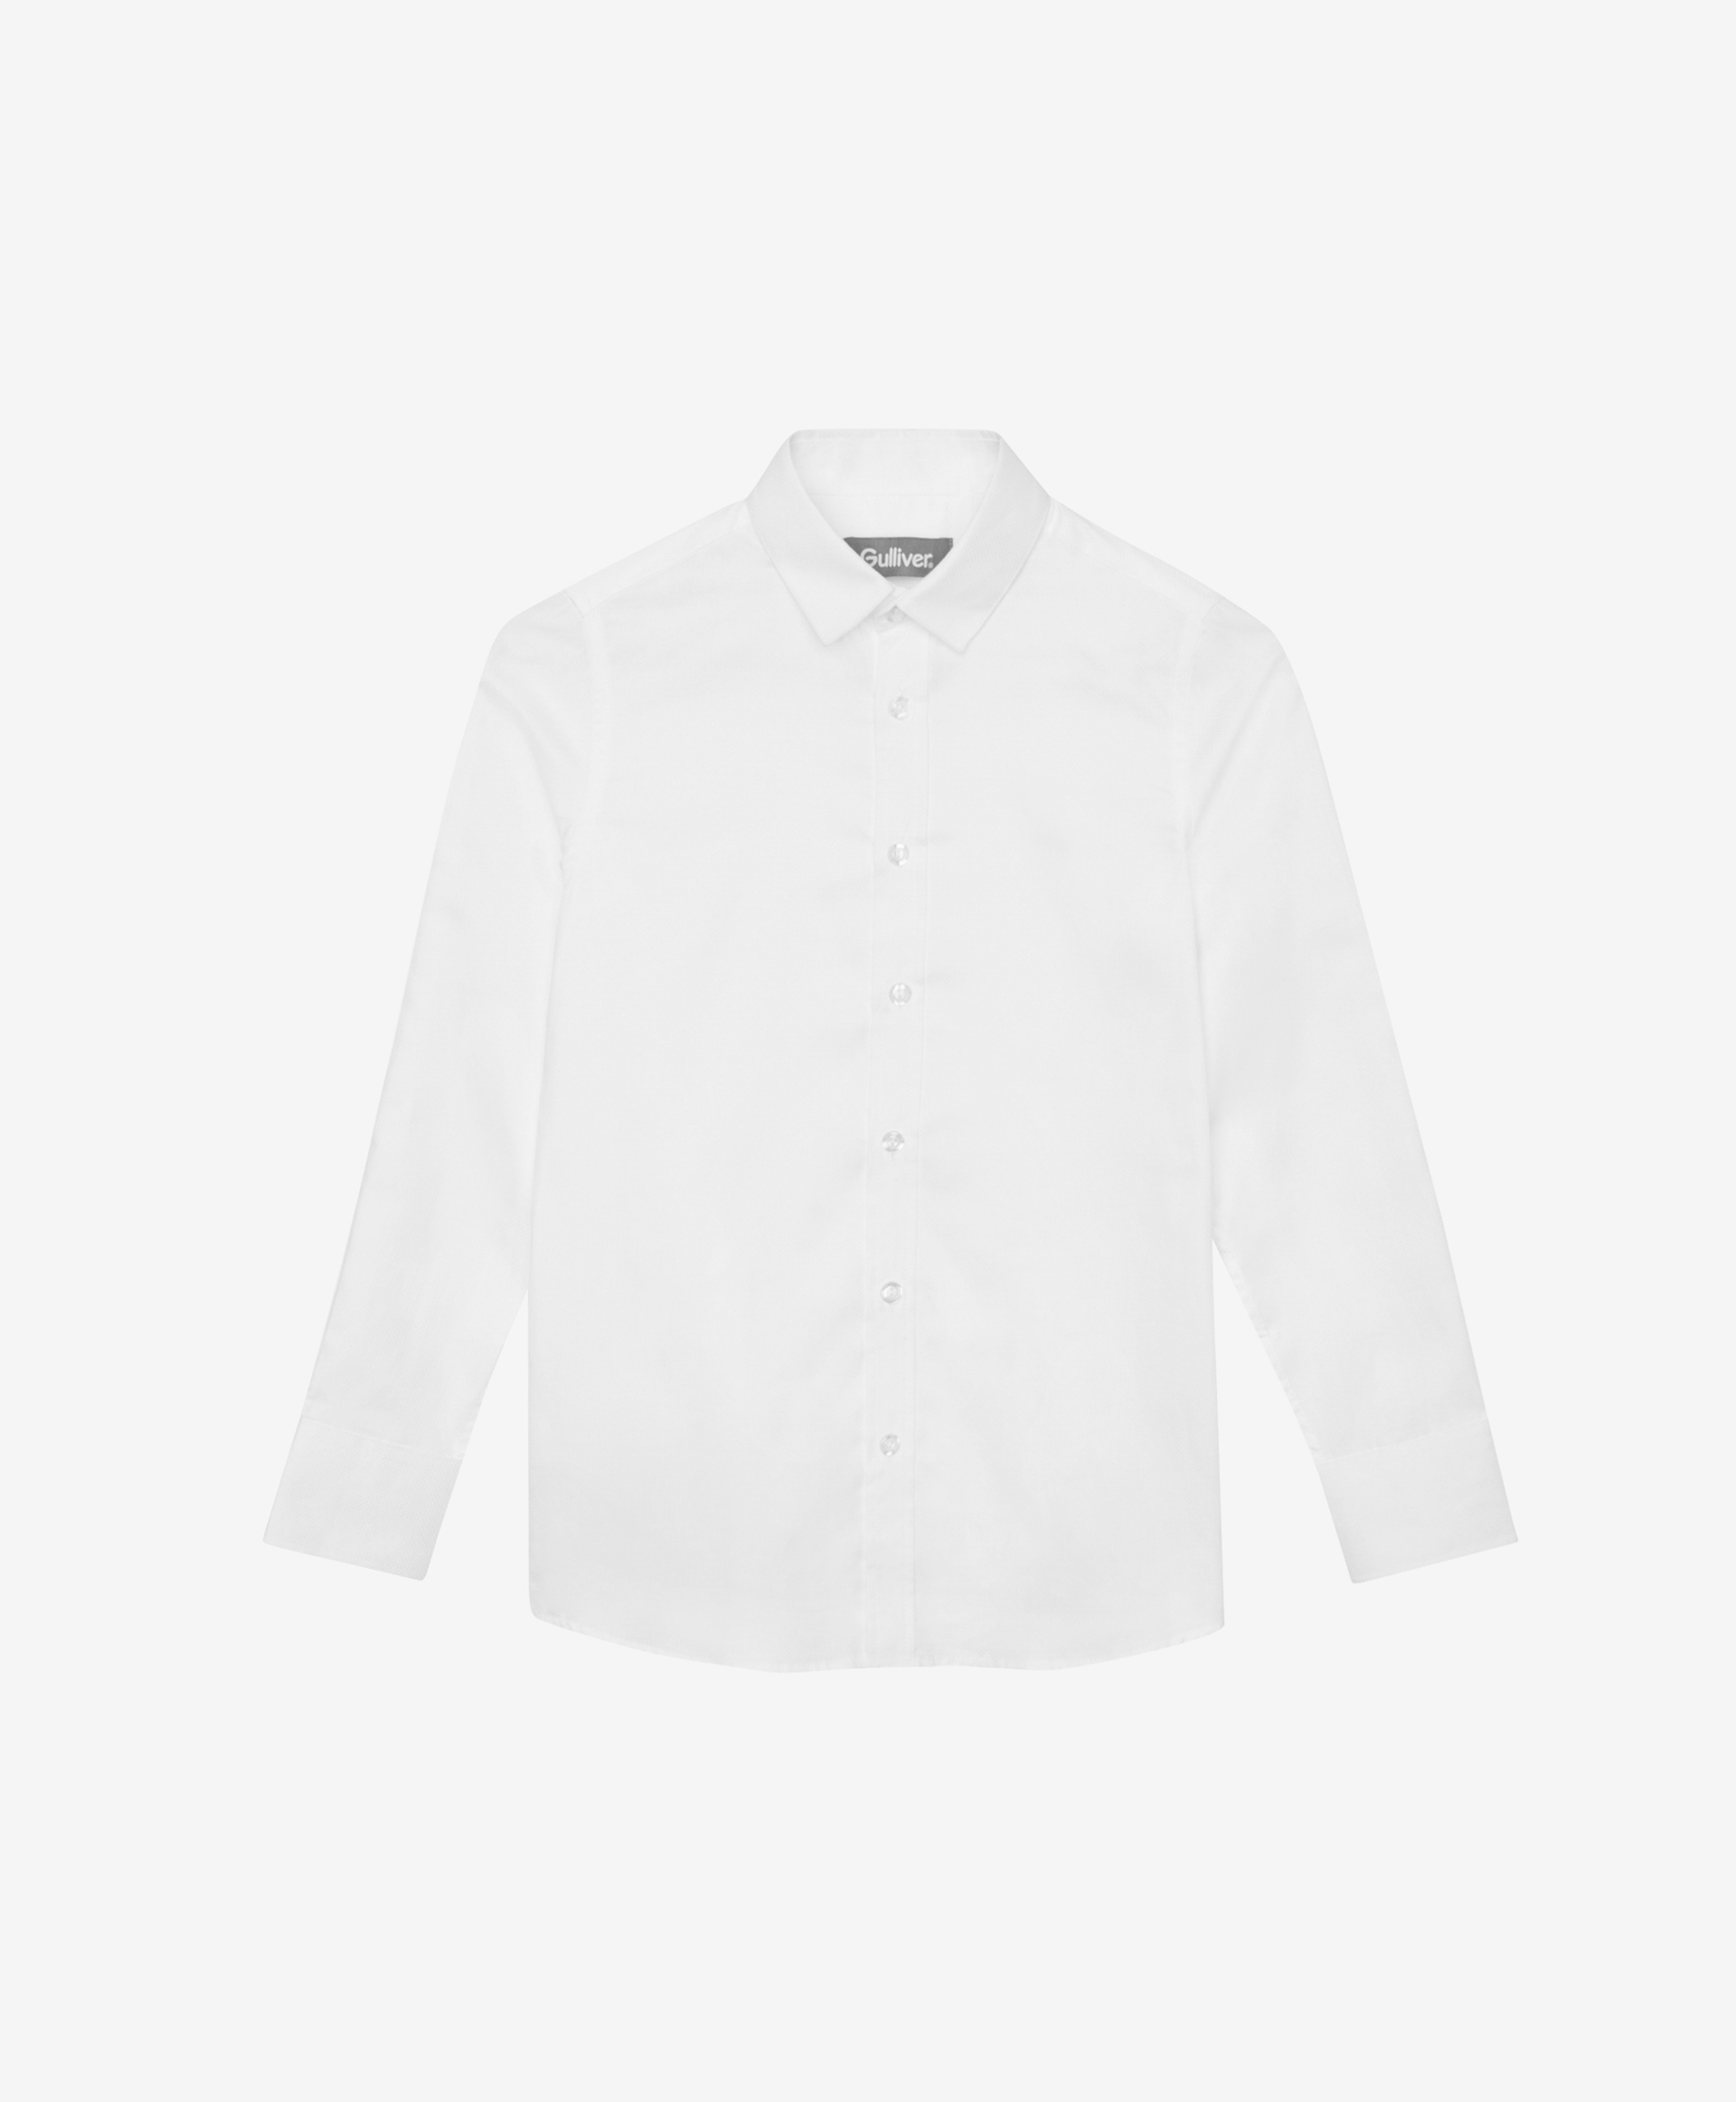 Сорочка белая с длинным рукавом Gulliver 200GSBC2302, размер 170, цвет белый - фото 3